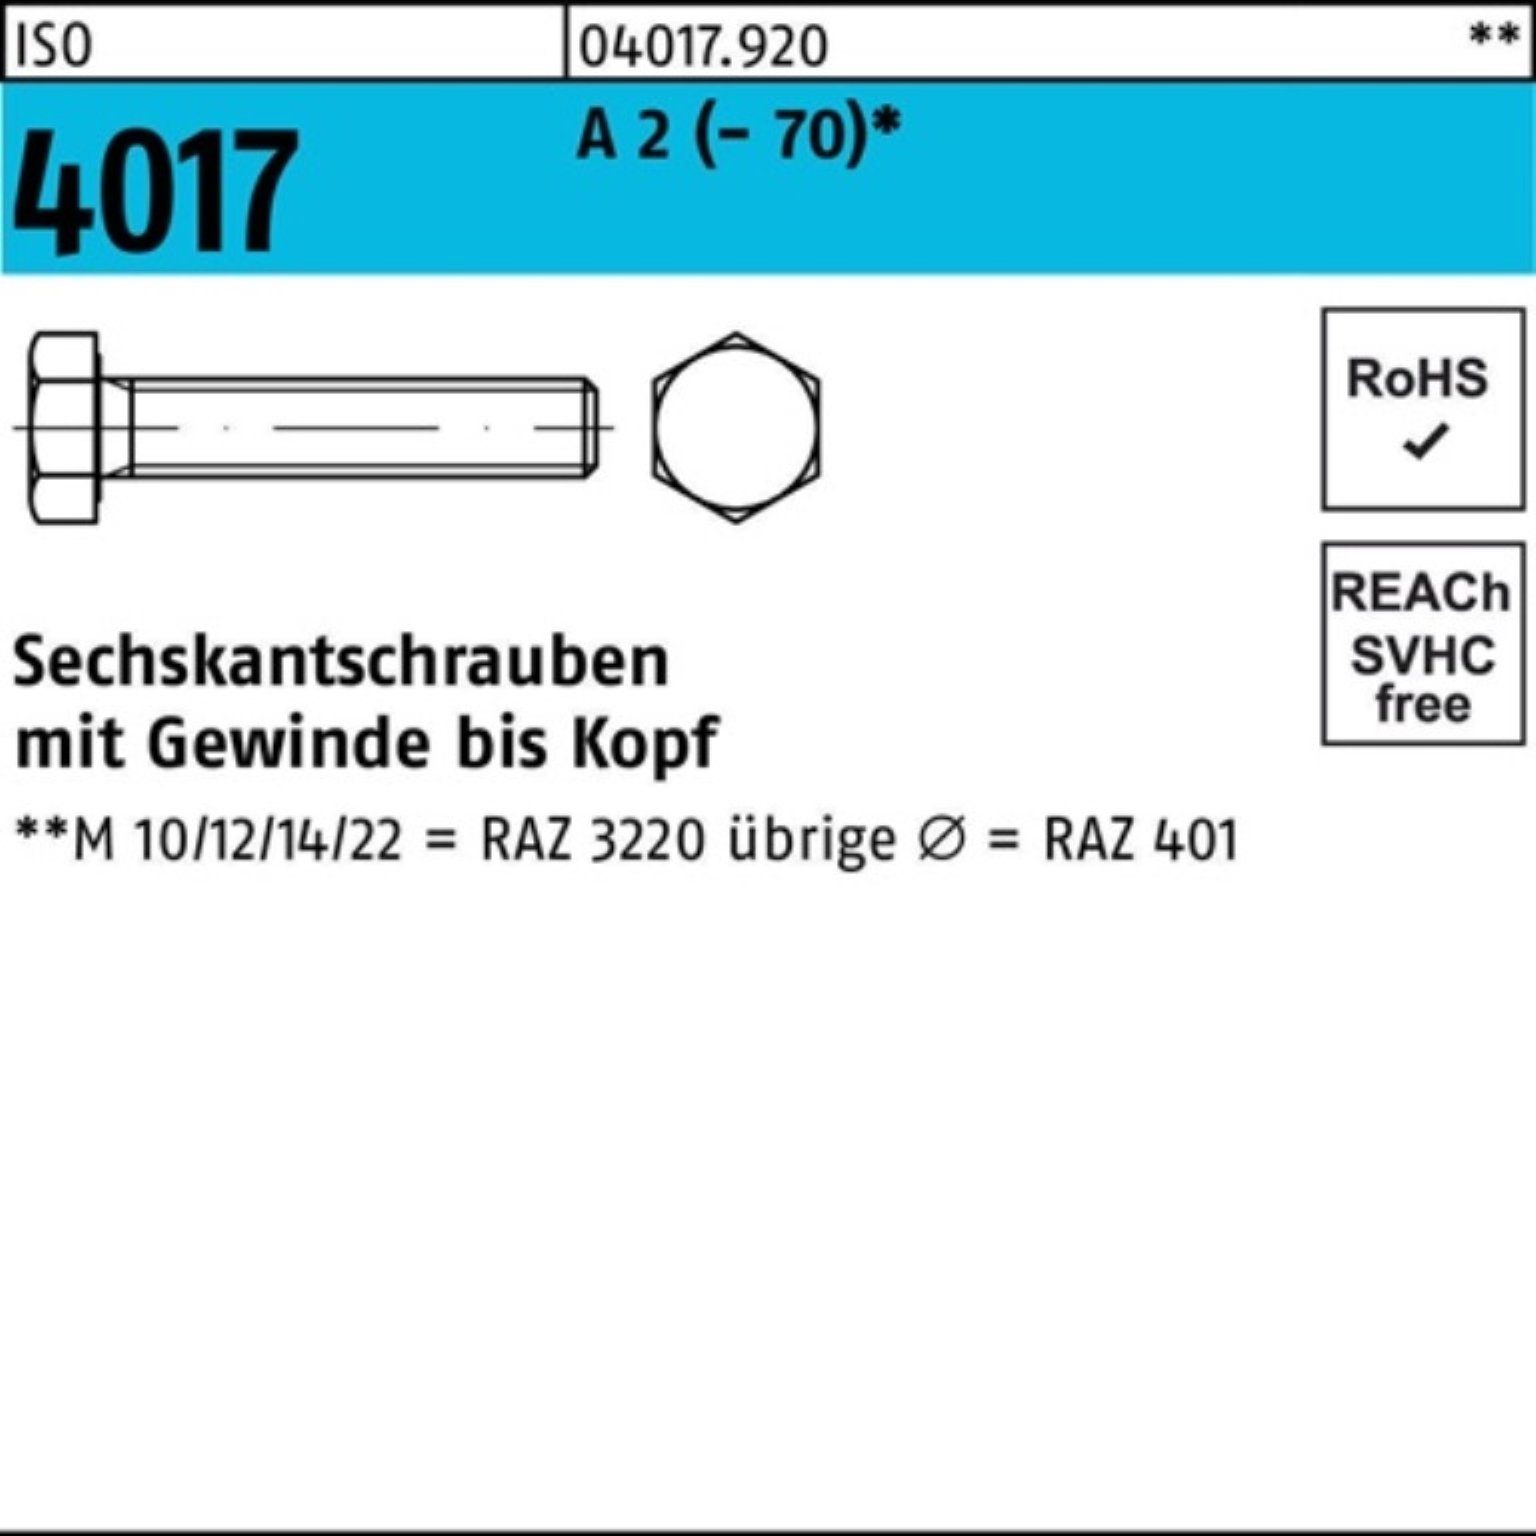 Sechskantschraube Bufab 10 (70) ISO VG Sechskantschraube Stück A Pack 110 M20x 4017 2 100er